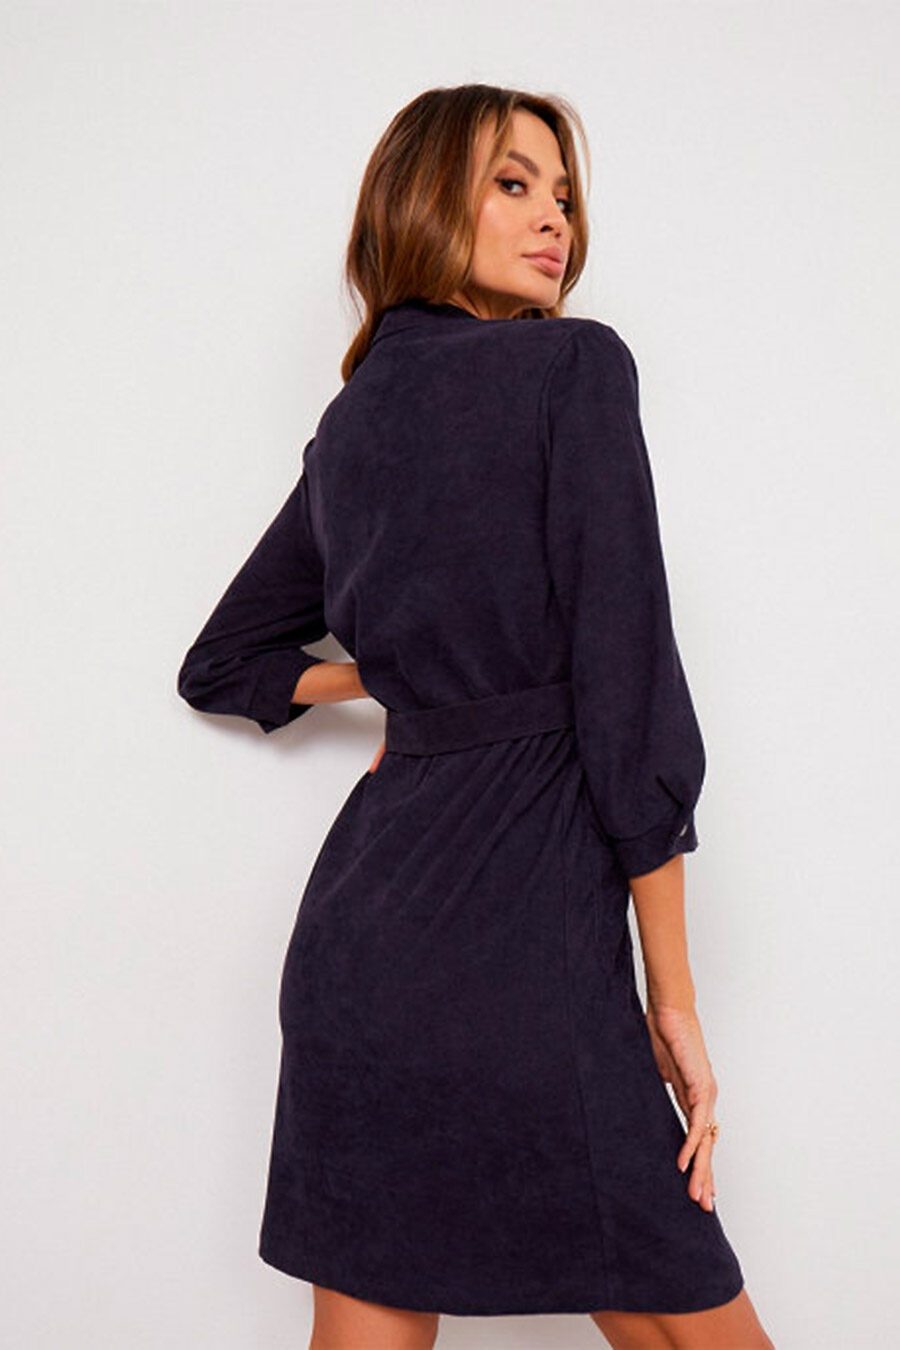 Платье для женщин VITTORIA VICCI 740249 купить оптом от производителя. Совместная покупка женской одежды в OptMoyo